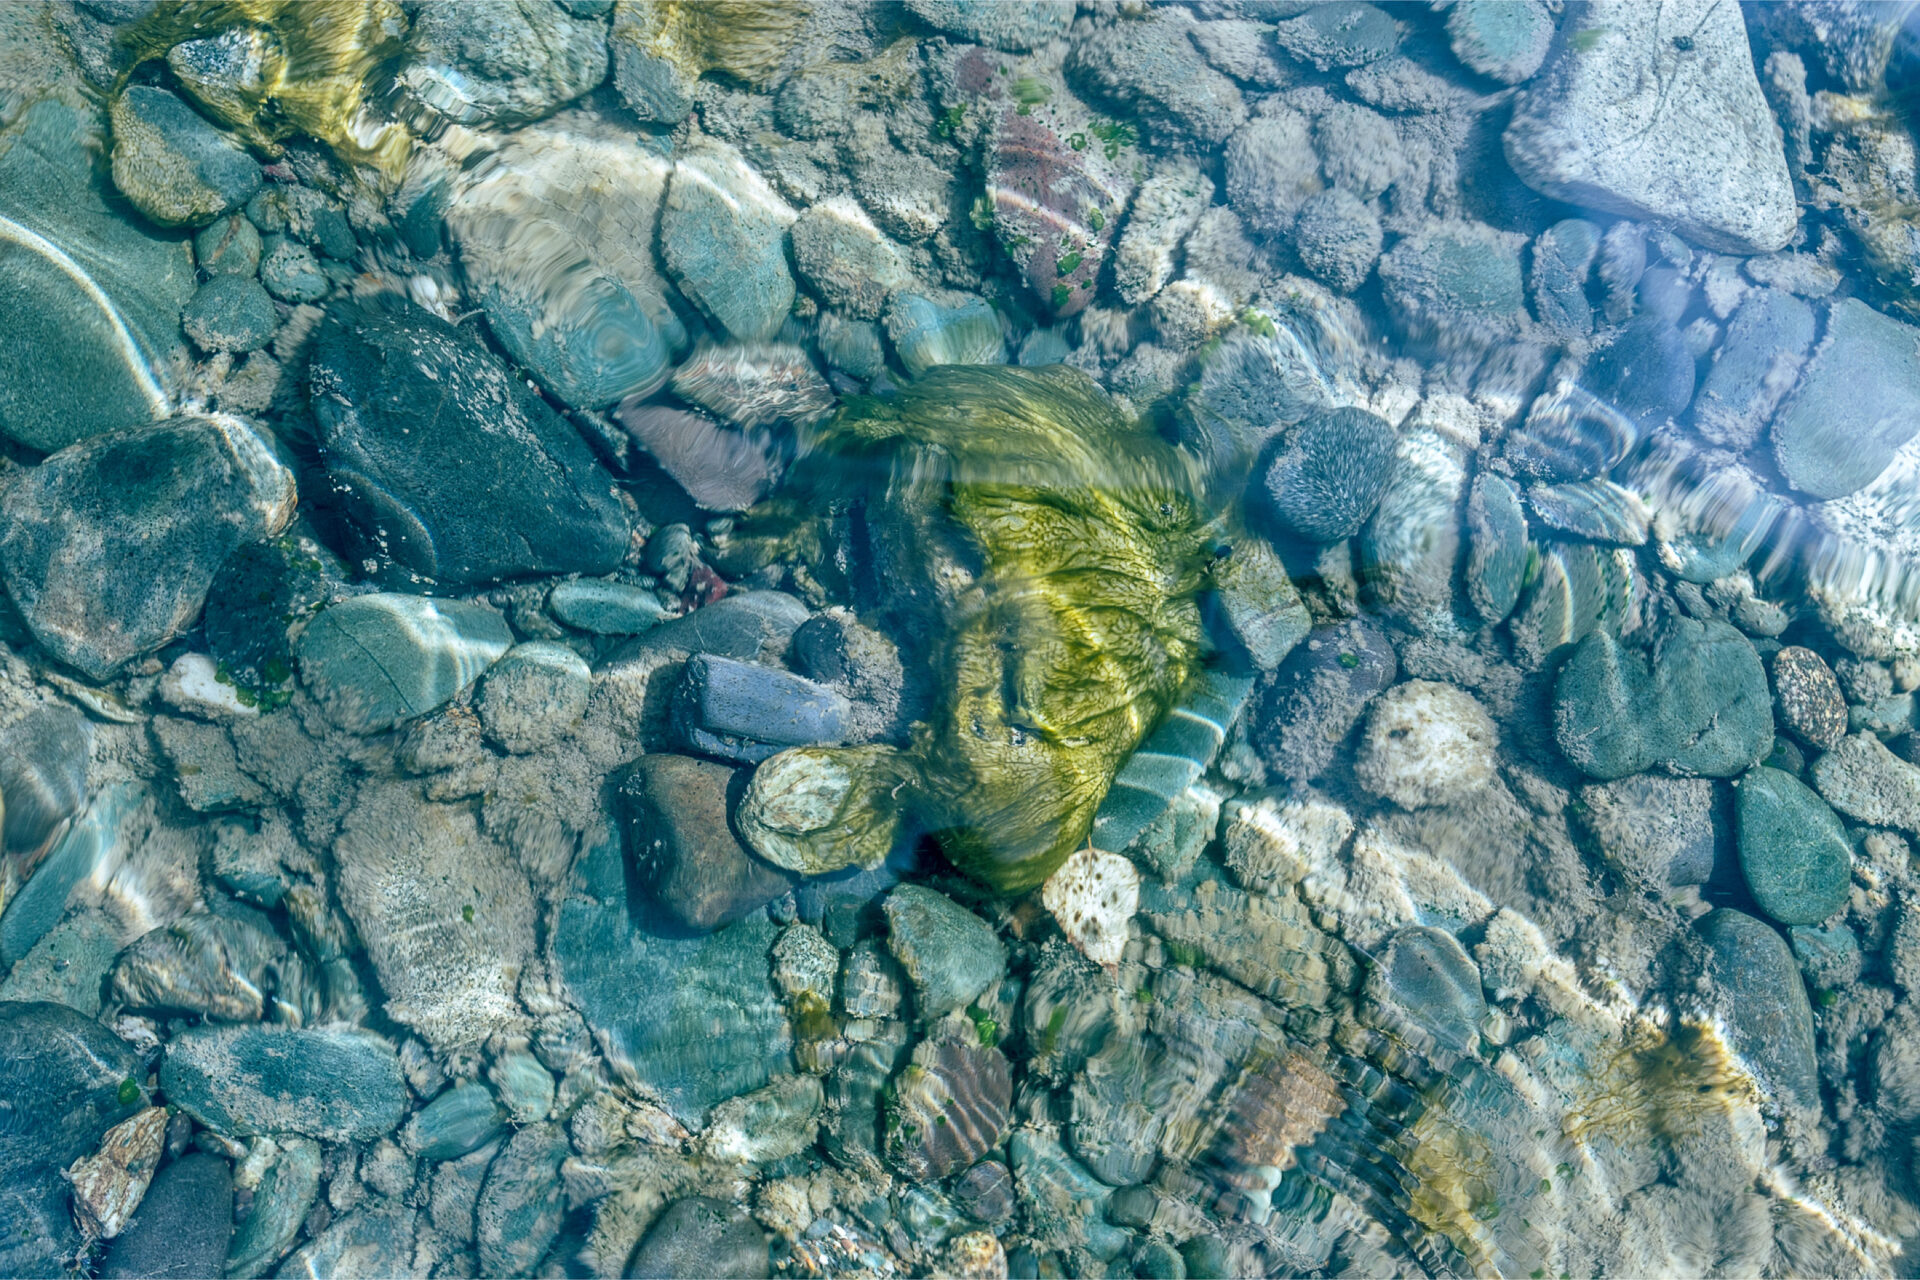 Moosbewachsener Stein in klarem Wasser